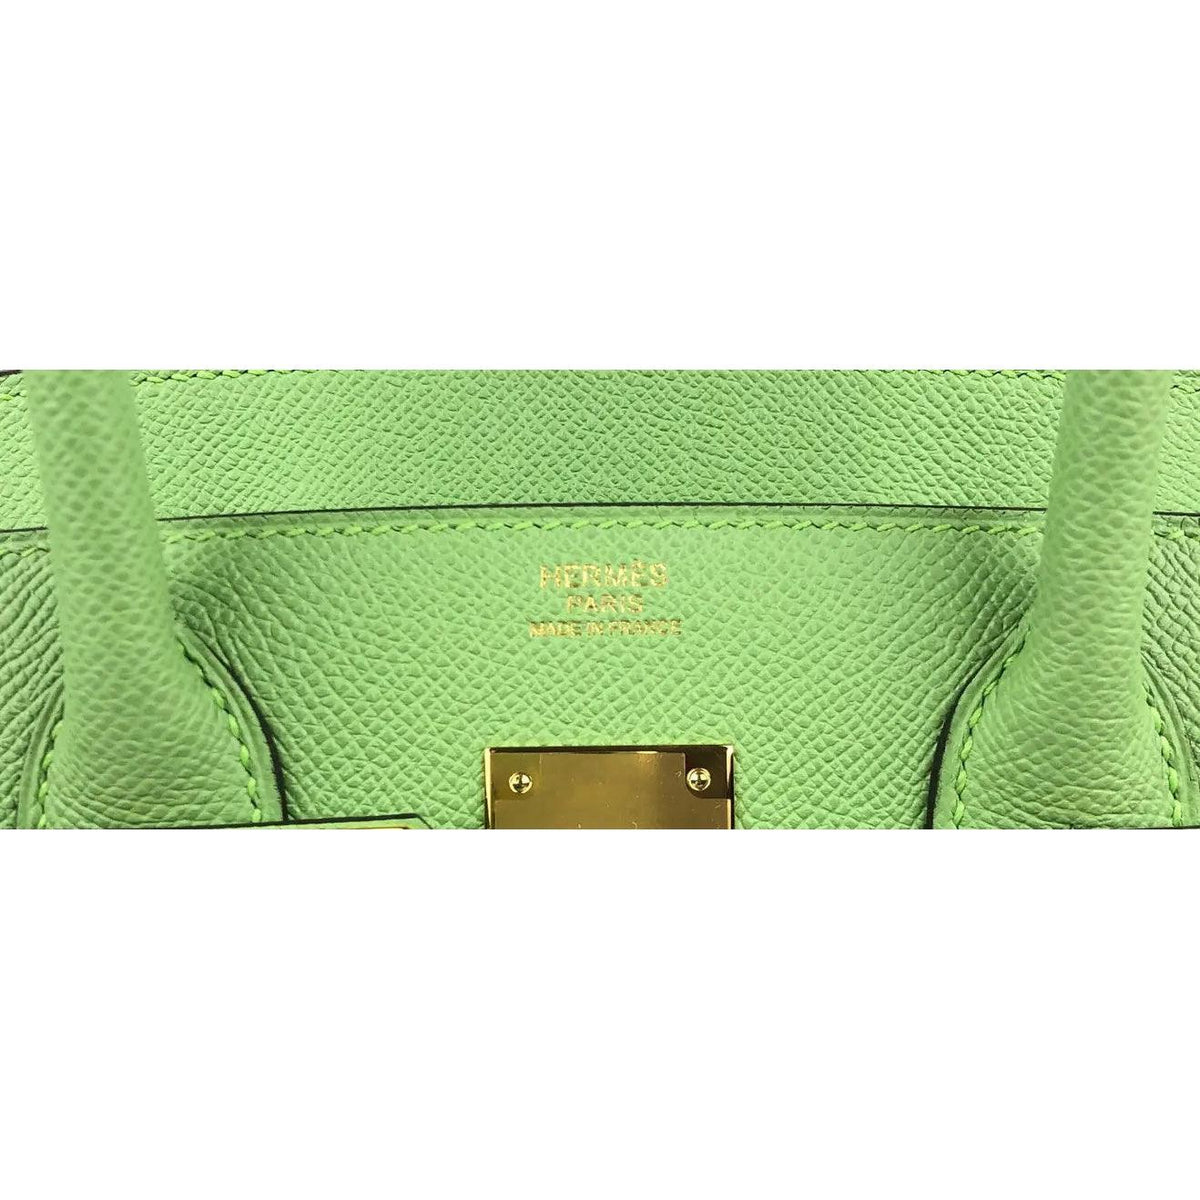 Hermes Birkin bag 35 Vert criquet Epsom leather Gold hardware